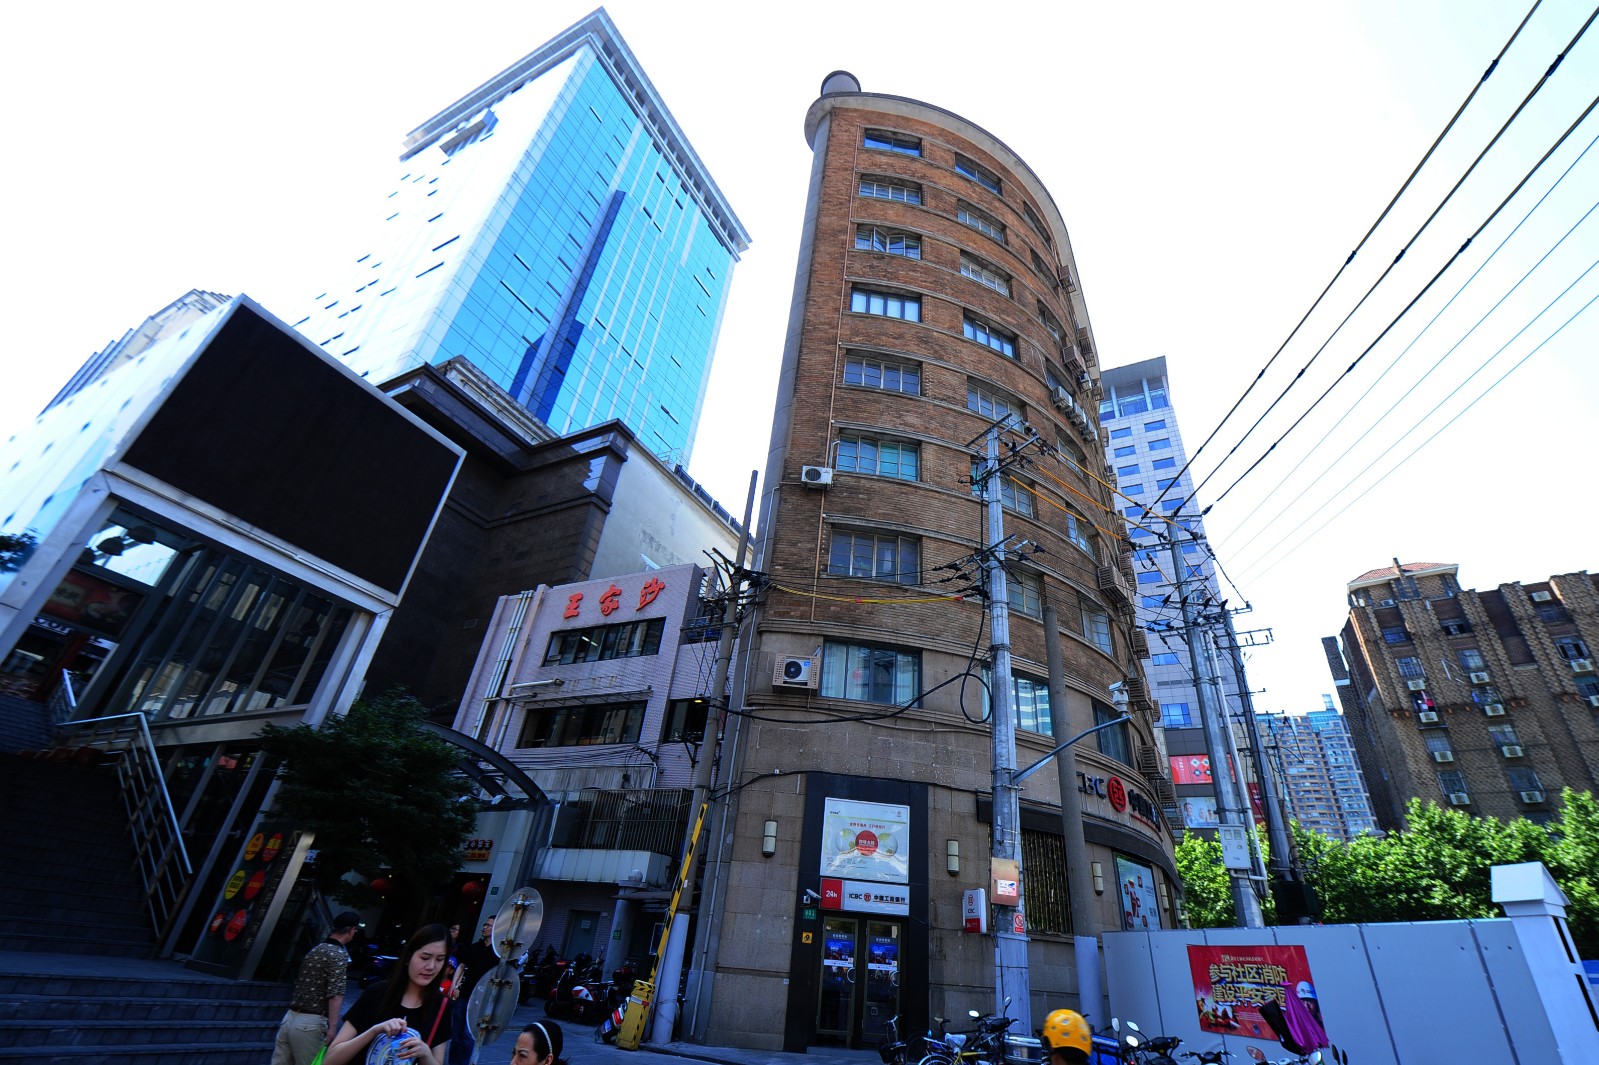 上海南京路石门路路口的同孚大楼,侧面看去薄似纸片,从附近的高楼